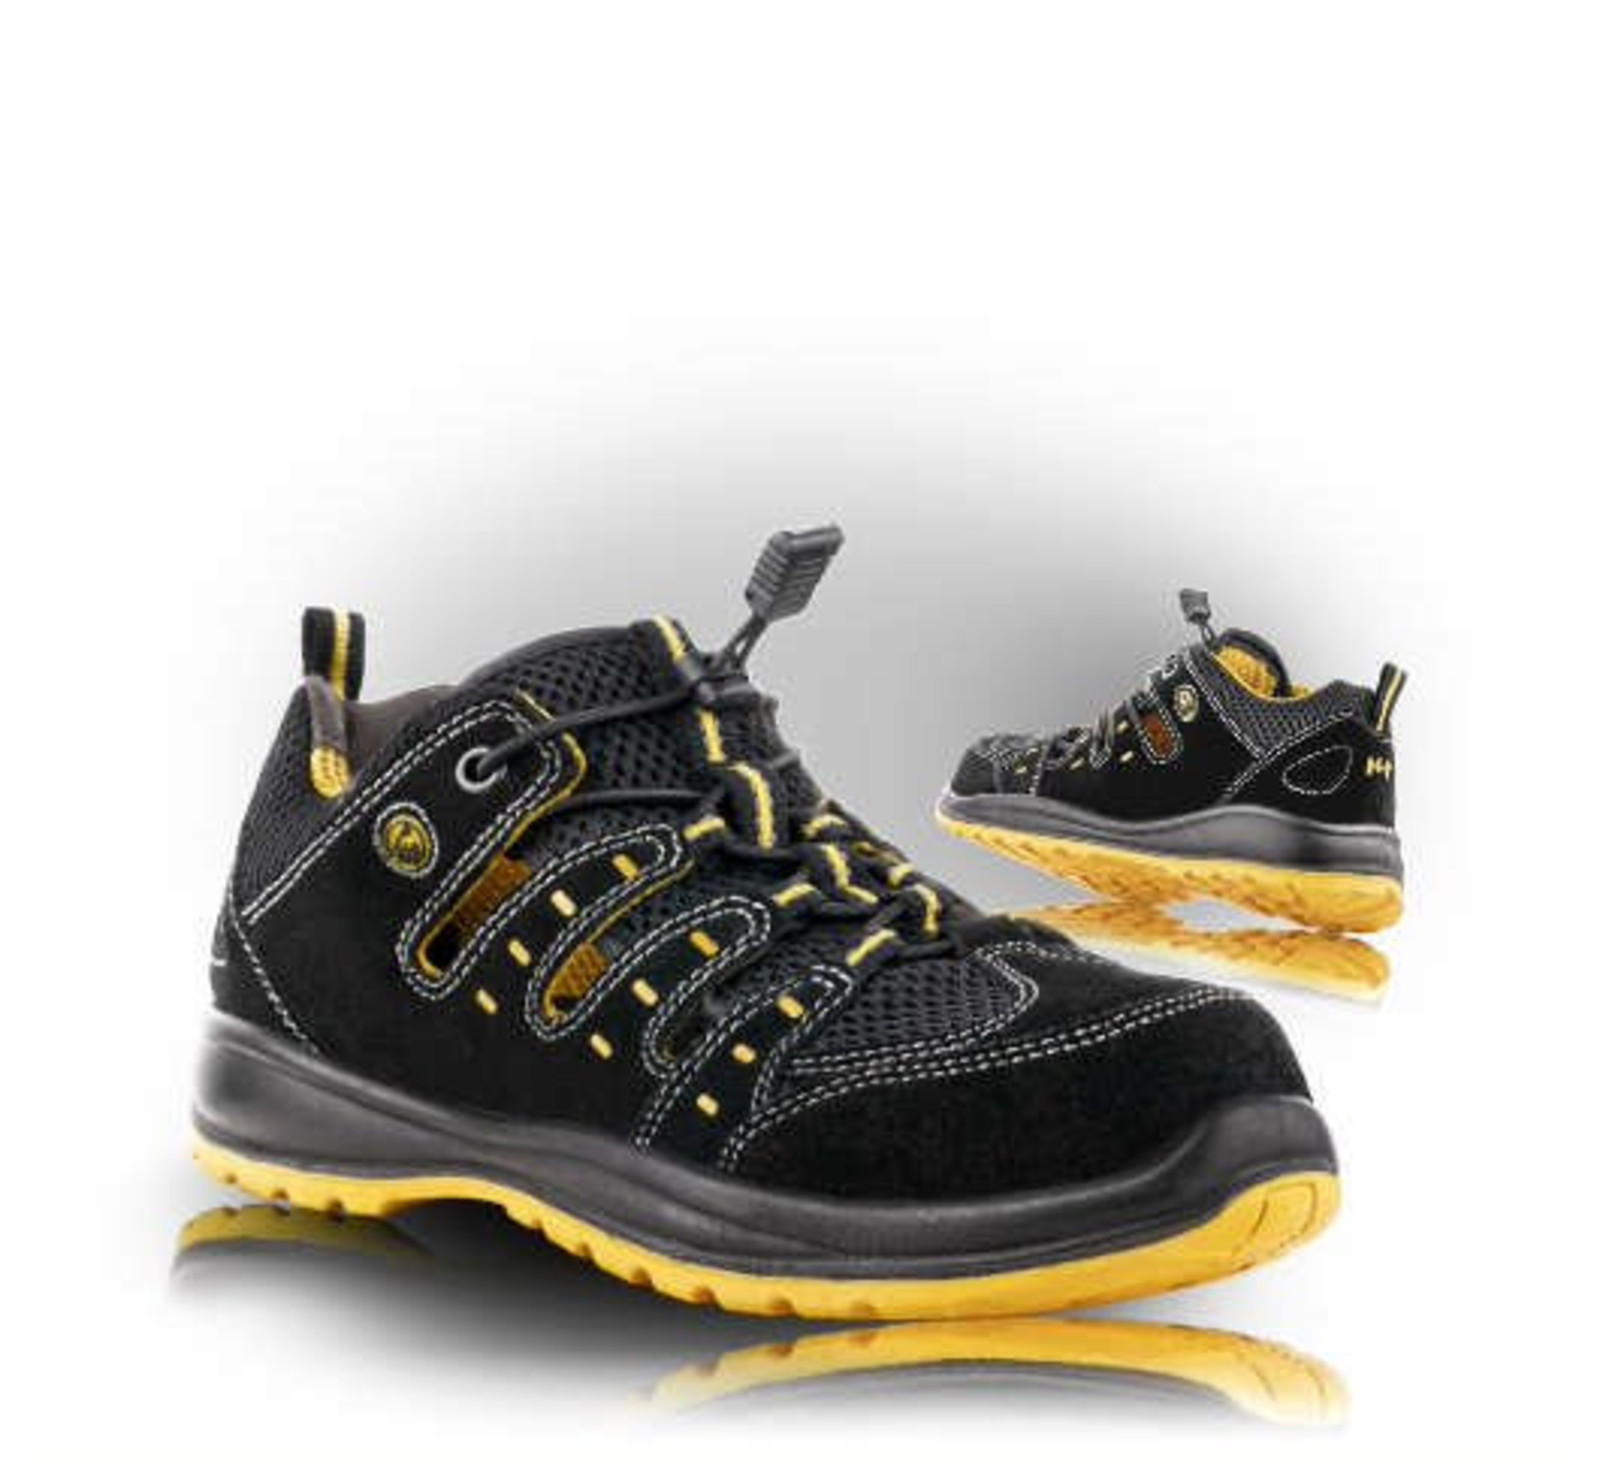 Bezpečnostné sandále Memphis S1 ESD - veľkosť: 40, farba: čierna/žltá